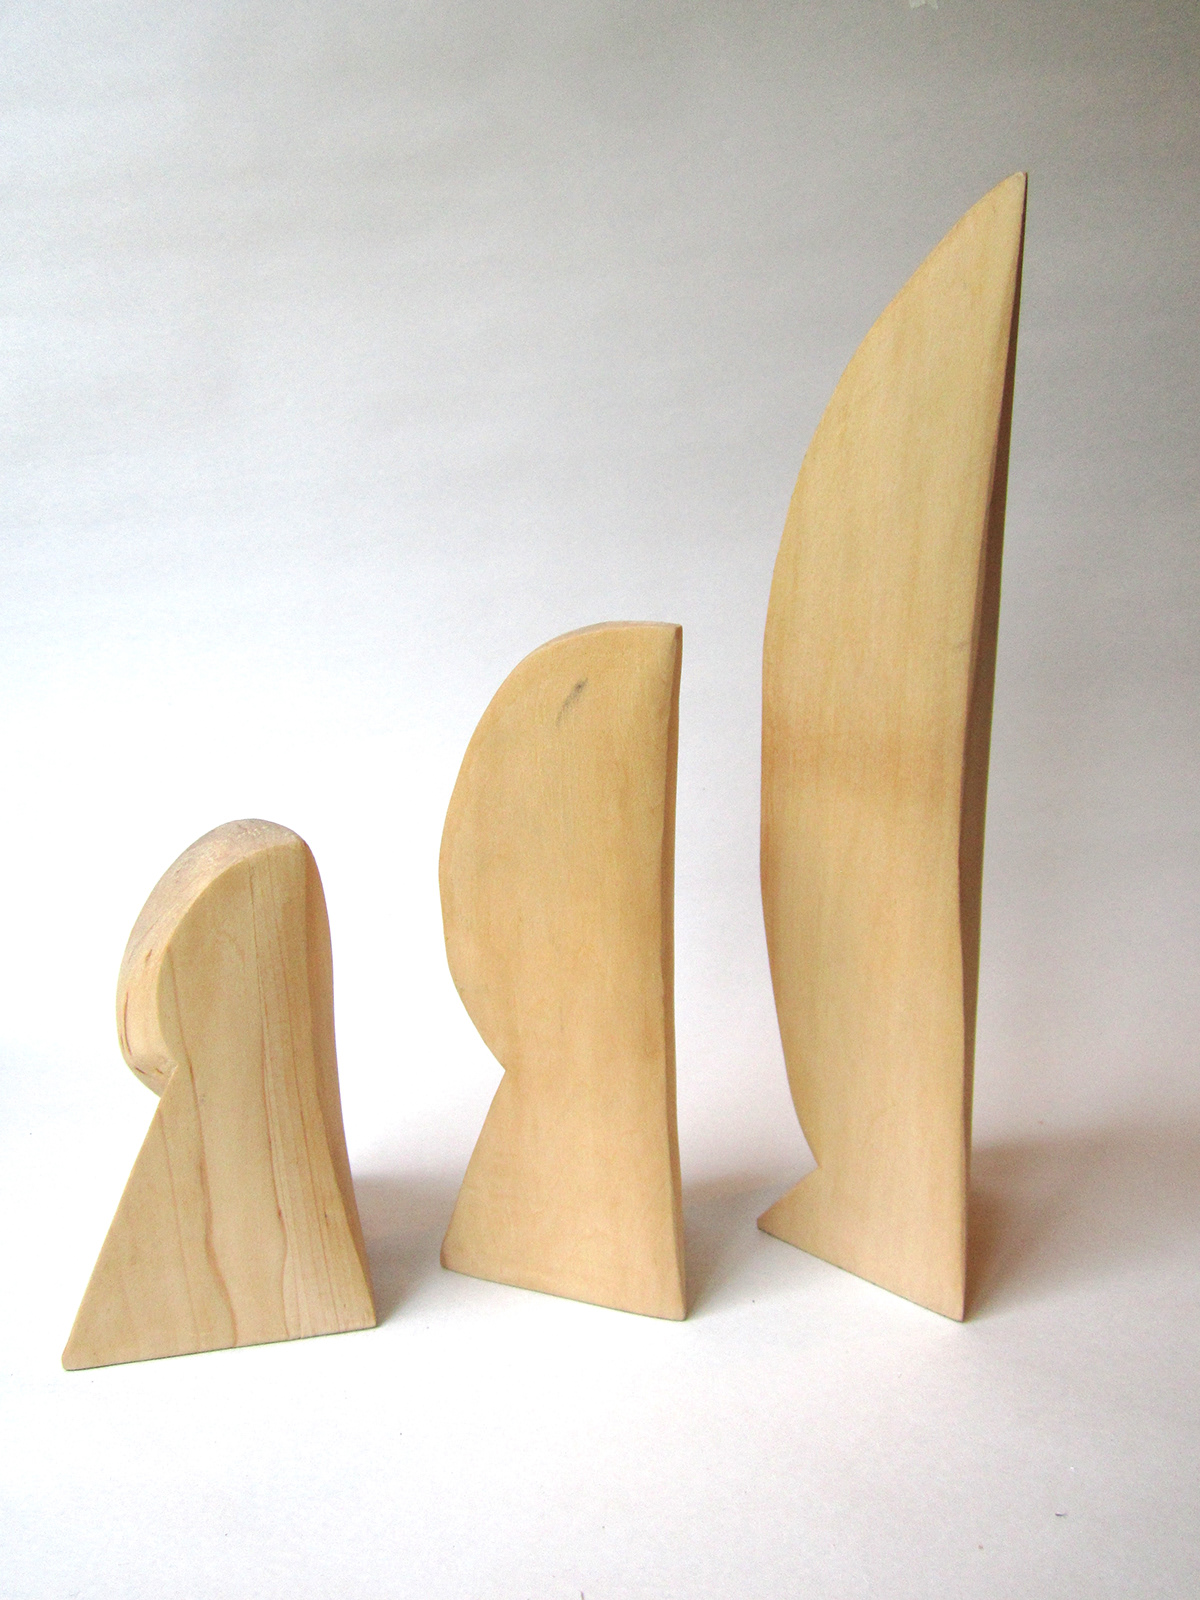 spatial  dynamics 3D  wood carving  Wood  sculpture